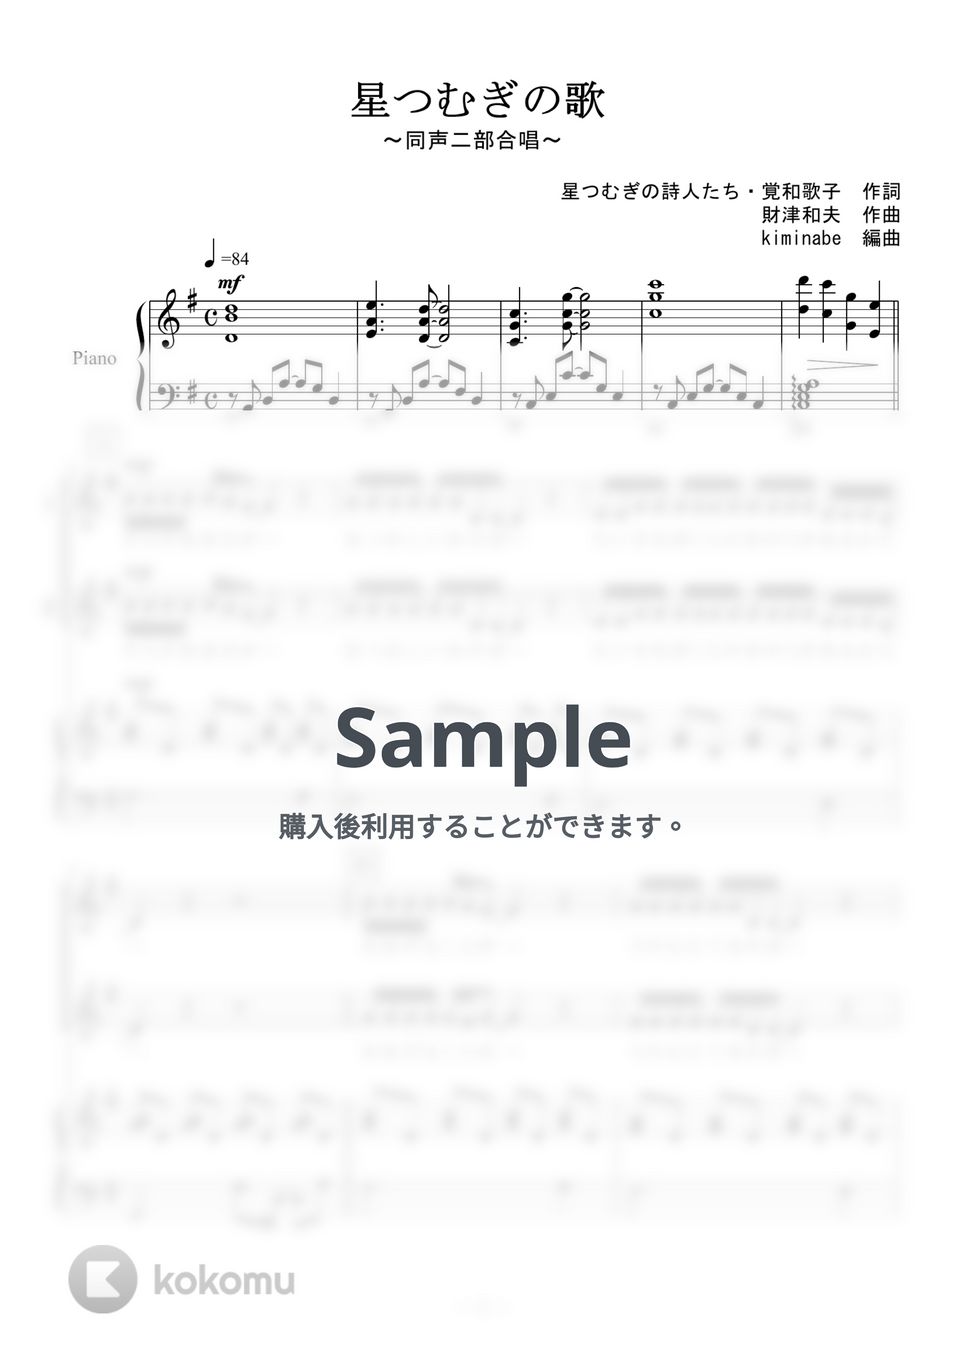 平原綾香 - 星つむぎの歌 (同声二部合唱) by kiminabe